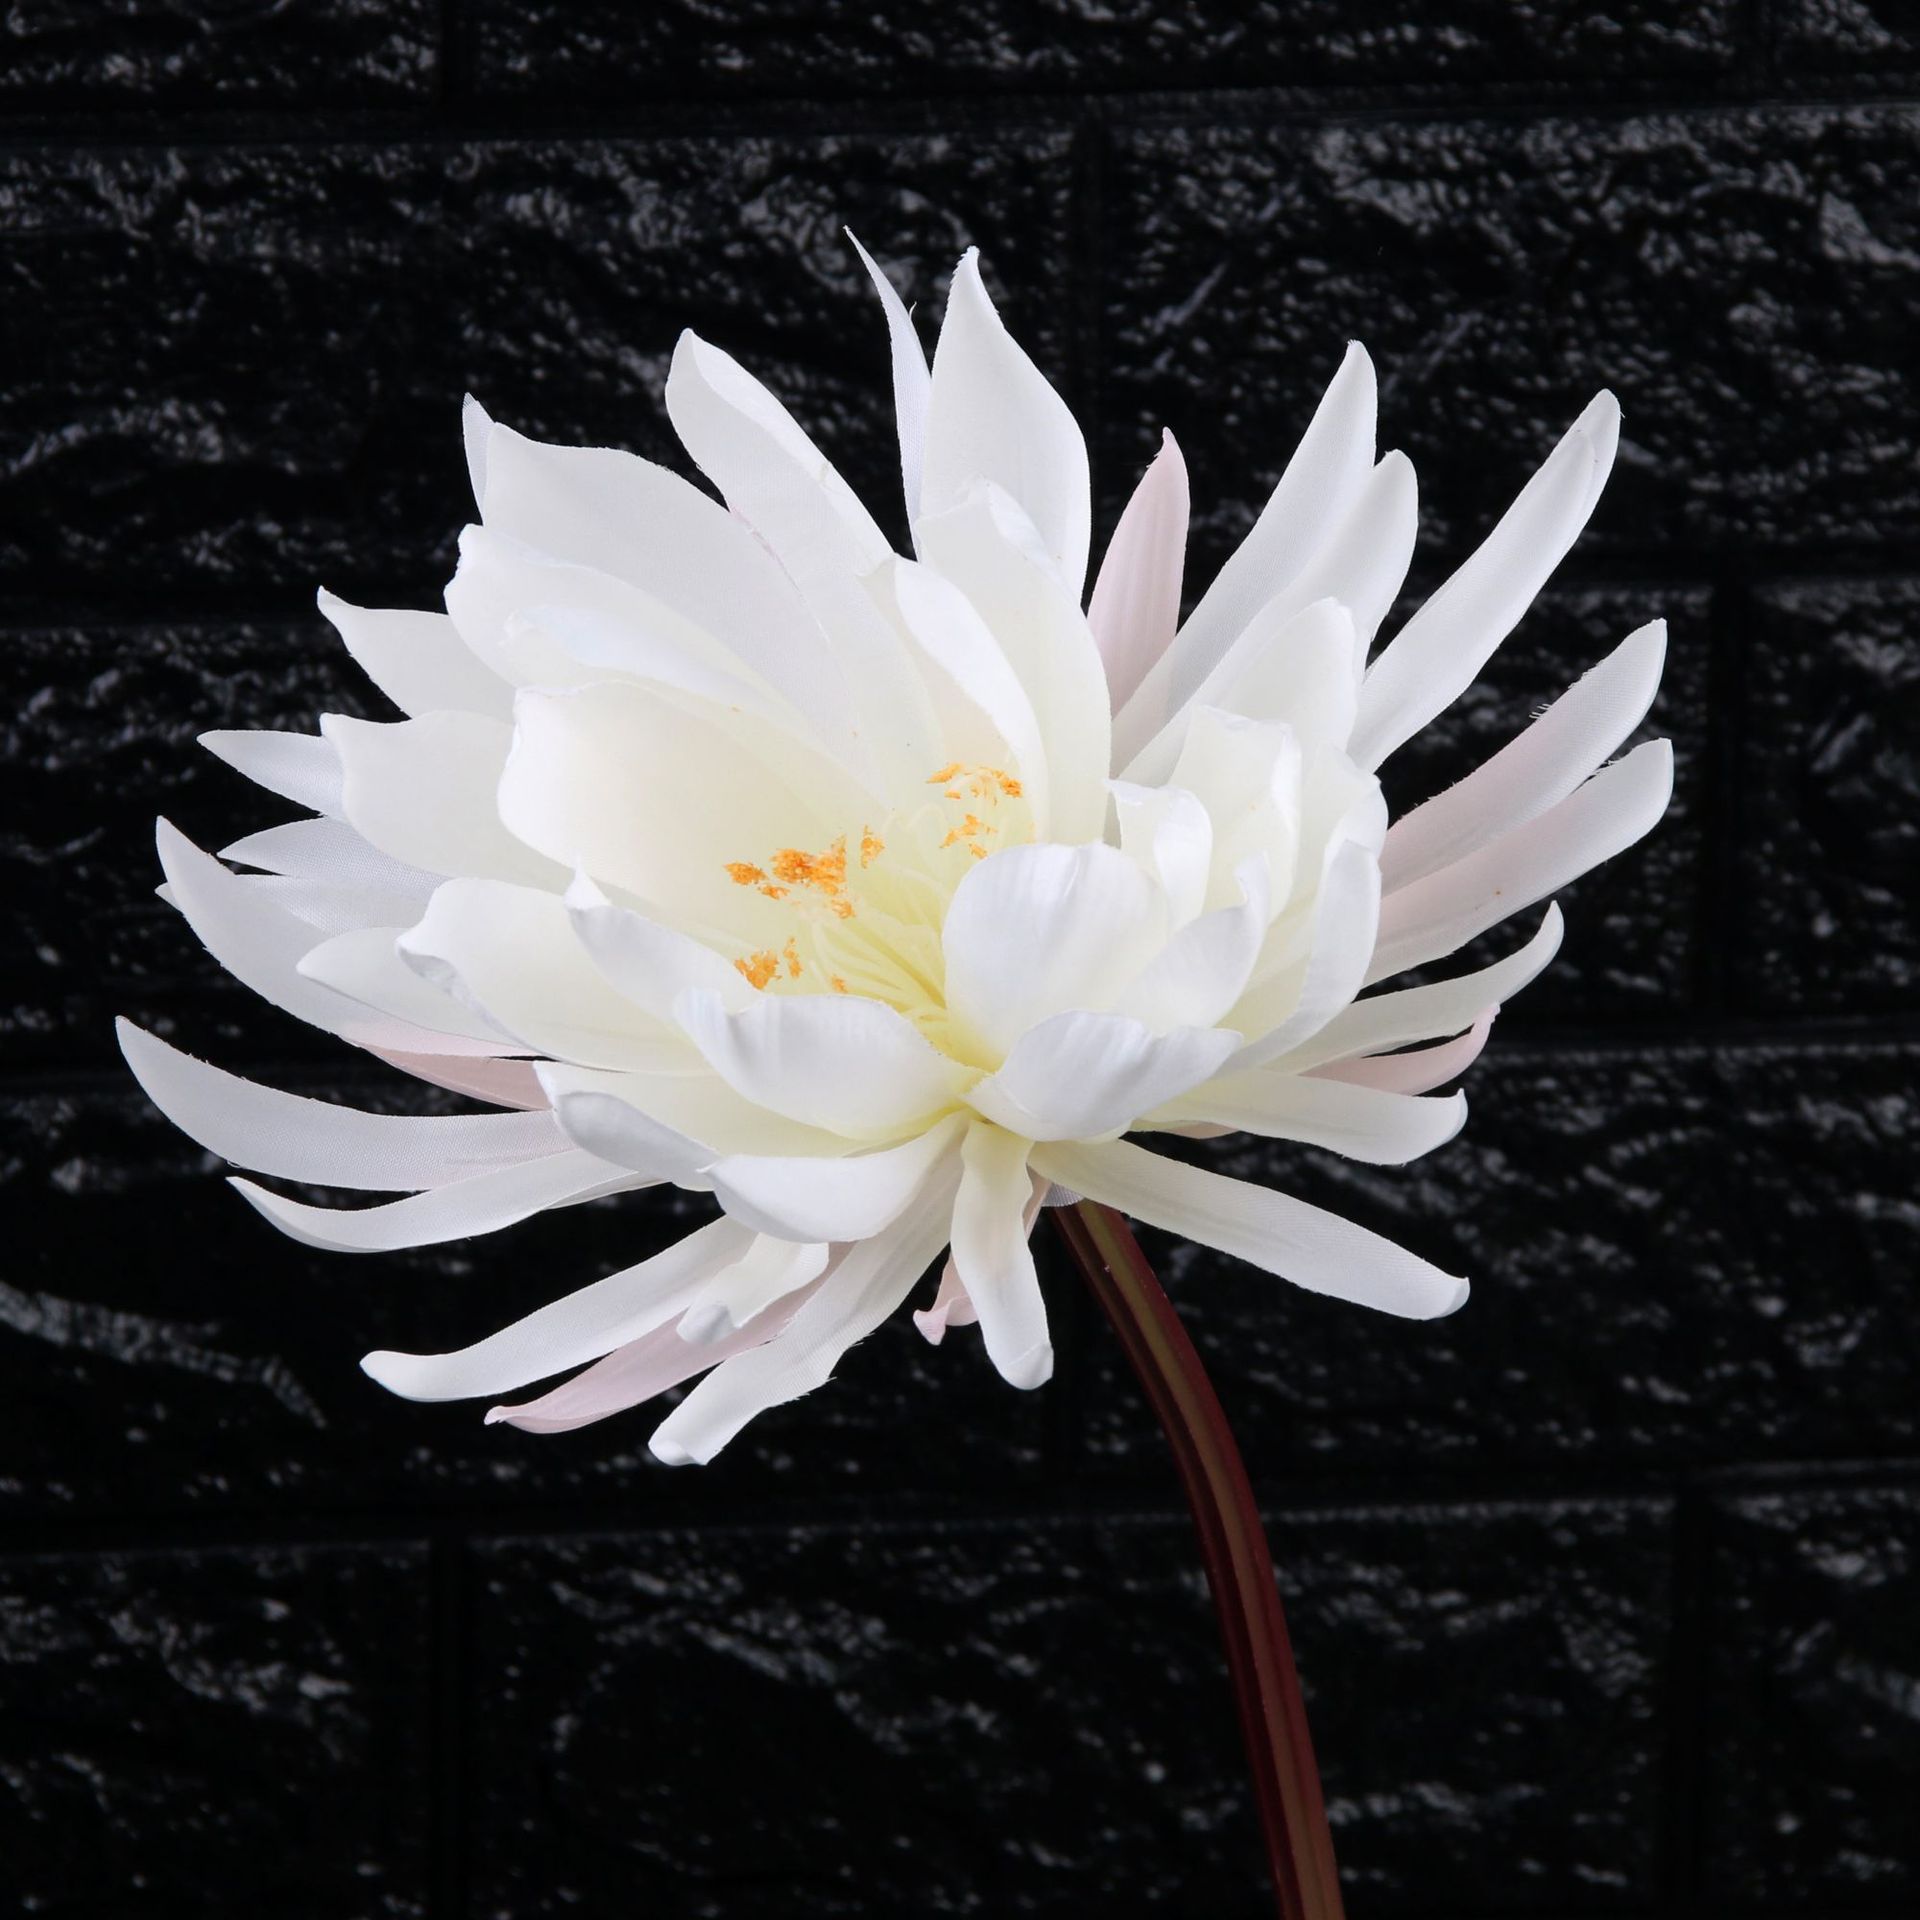 Ảnh hoa Sen white nền tối đặc biệt đẹp